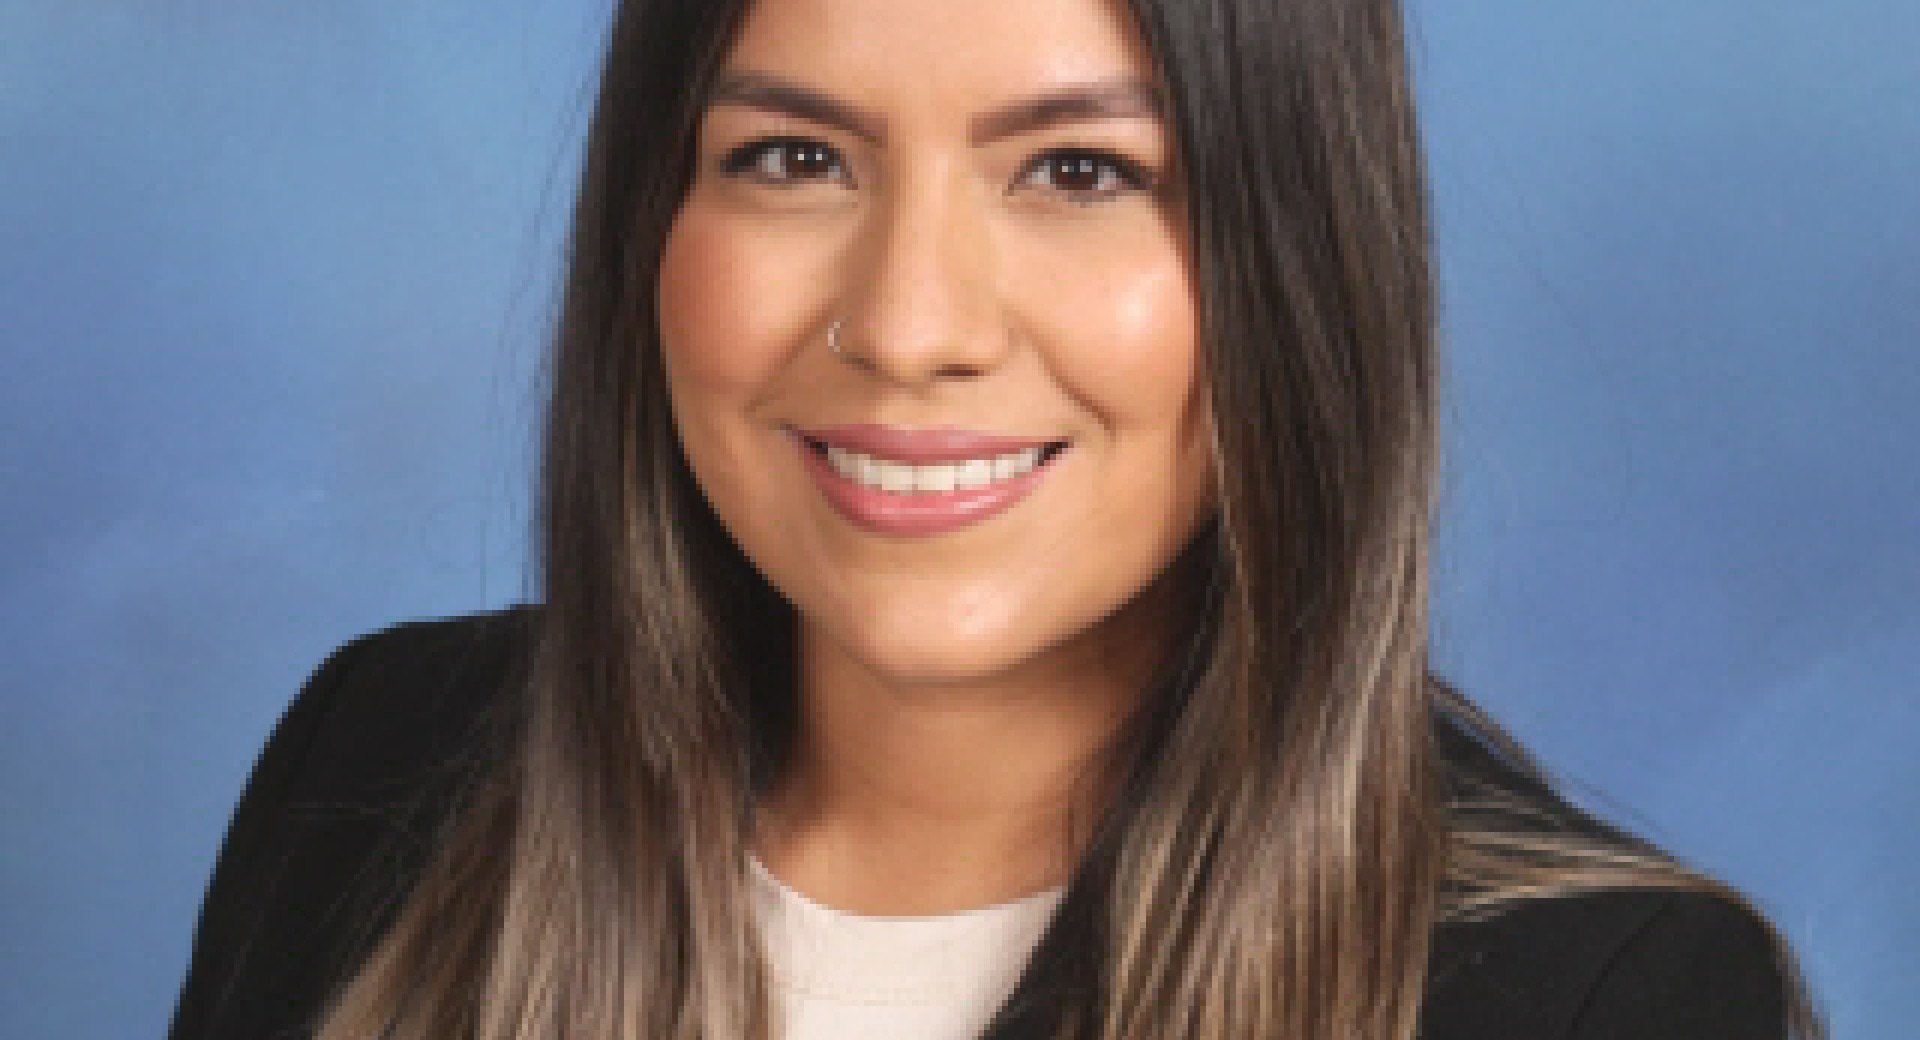 Jennifer Anaya Sanchez